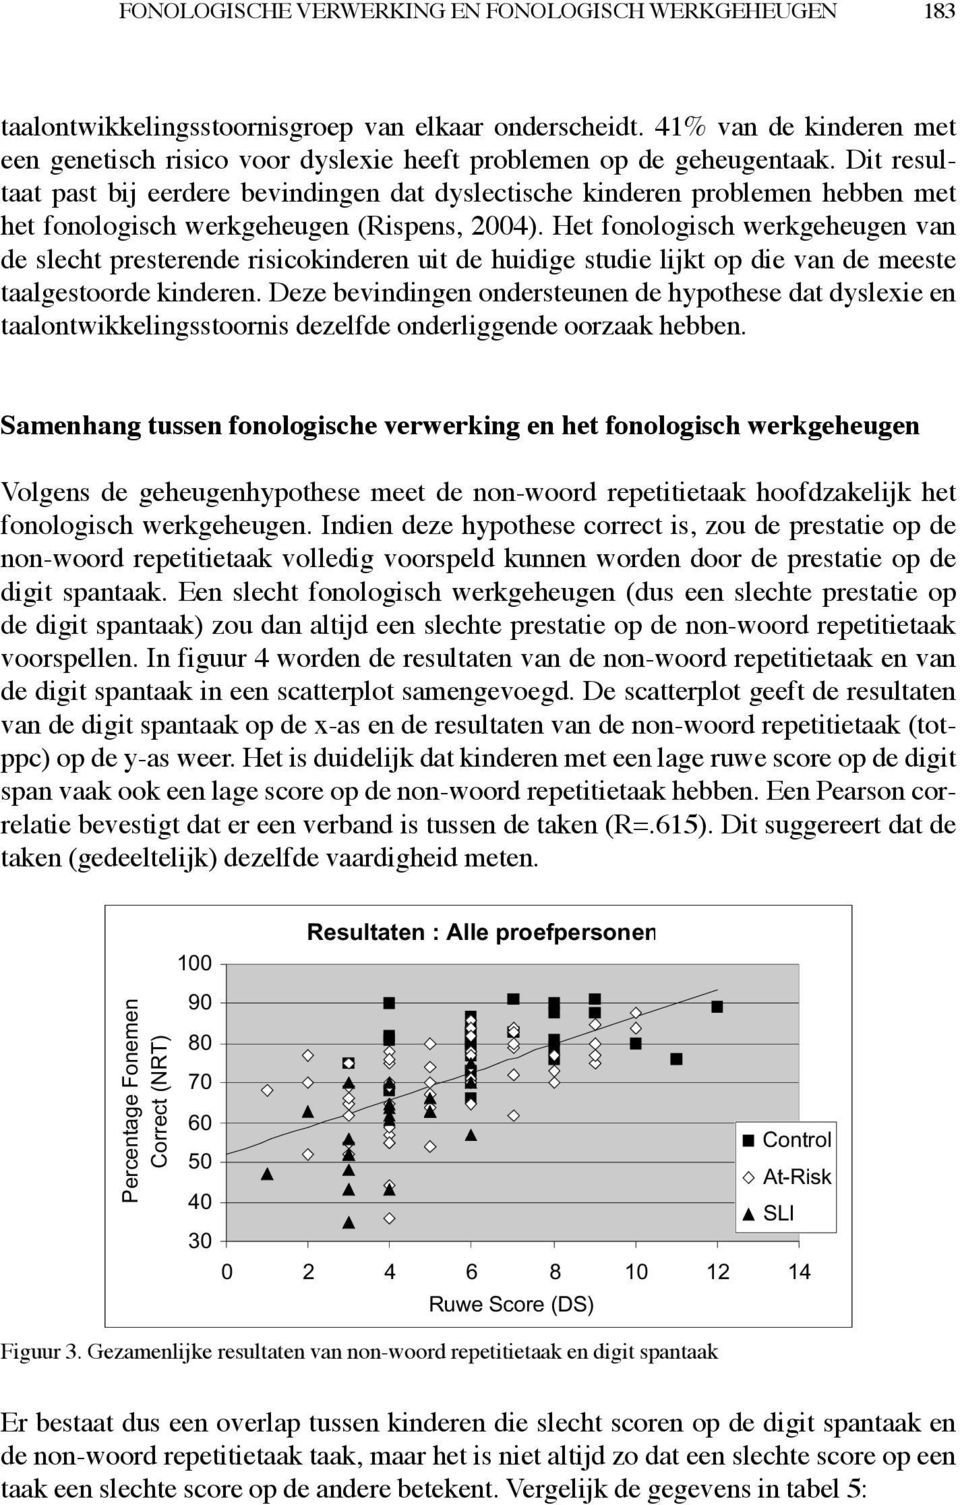 Dit resultaat past bij eerdere bevindingen dat dyslectische kinderen problemen hebben met het fonologisch werkgeheugen (Rispens, 2004).